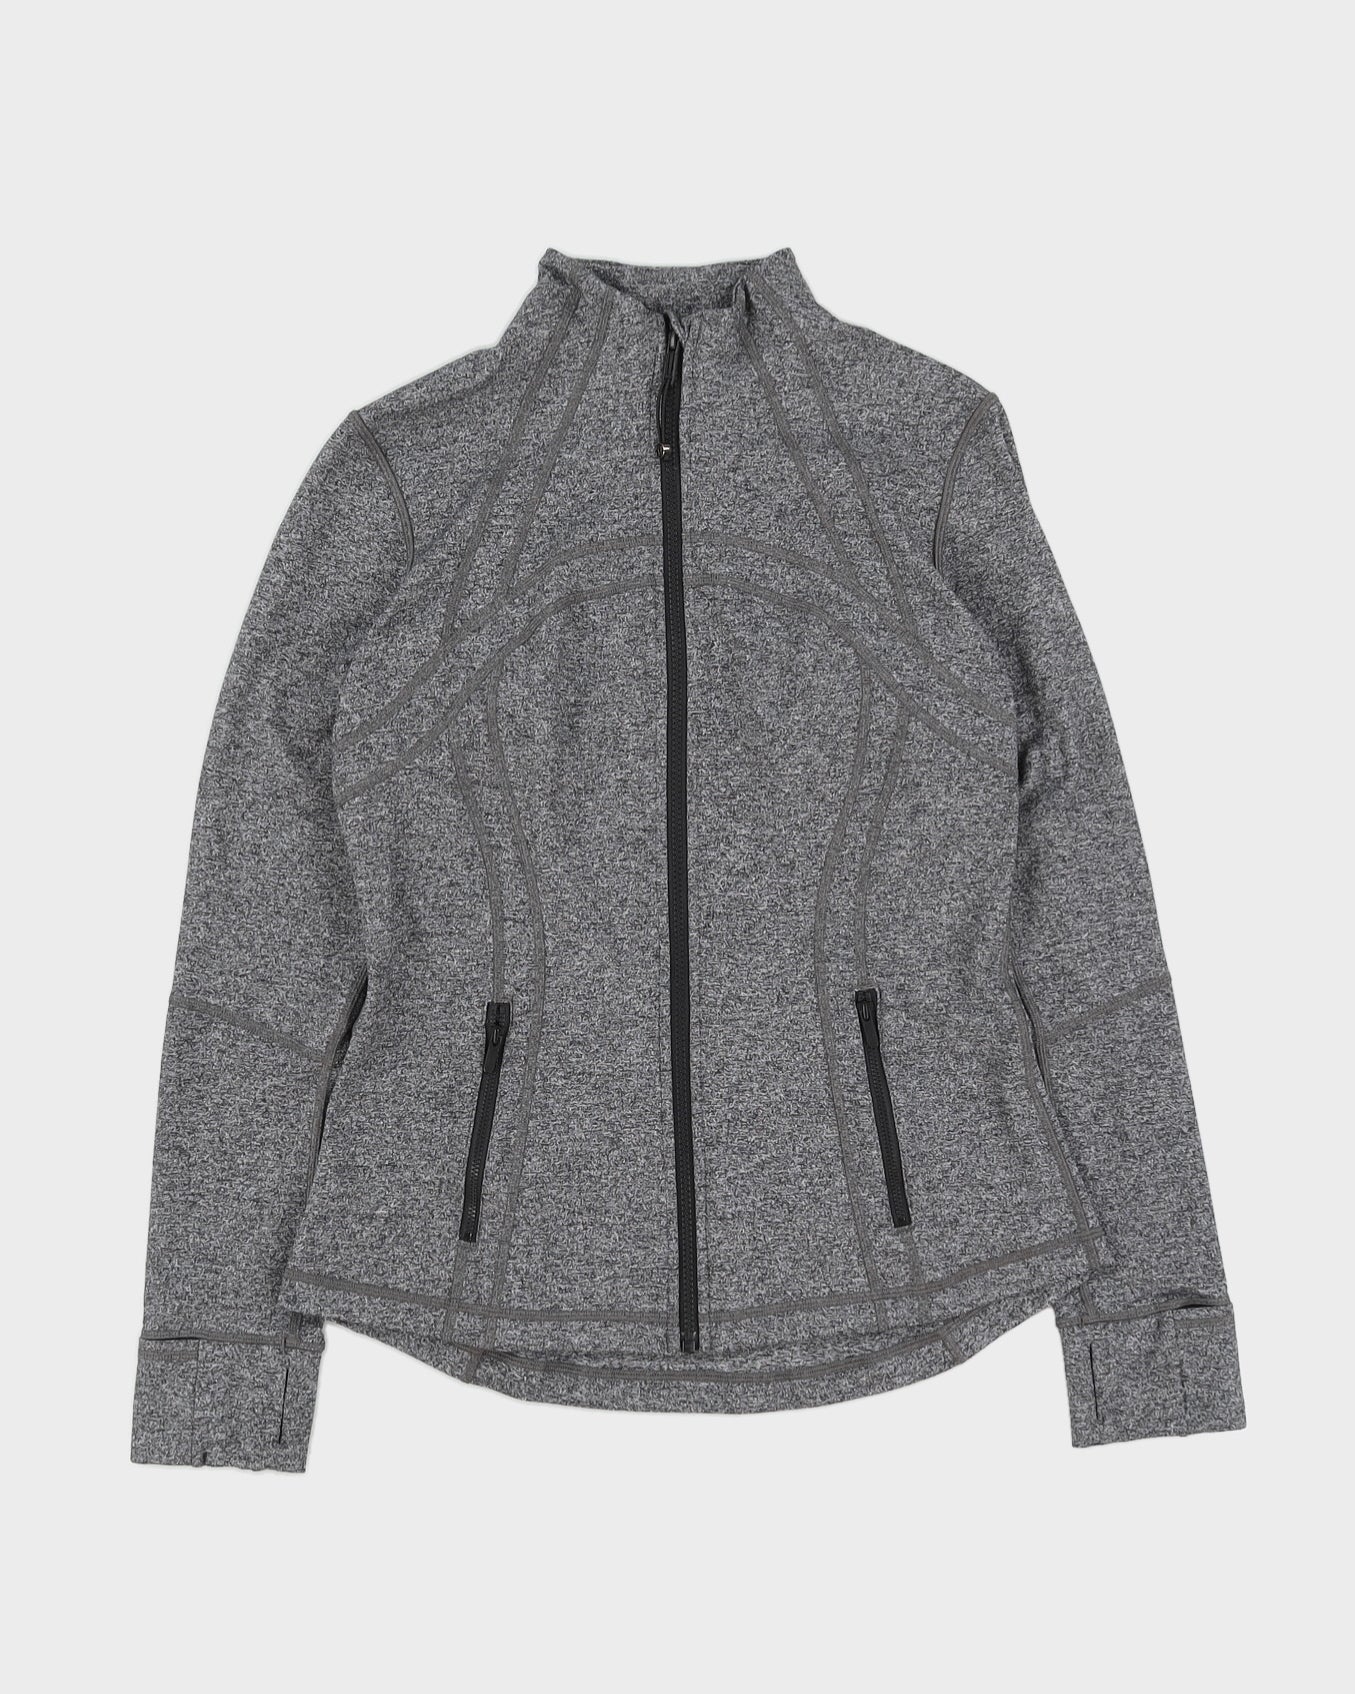 Lululemon Grey Melange Sports Jacket - S